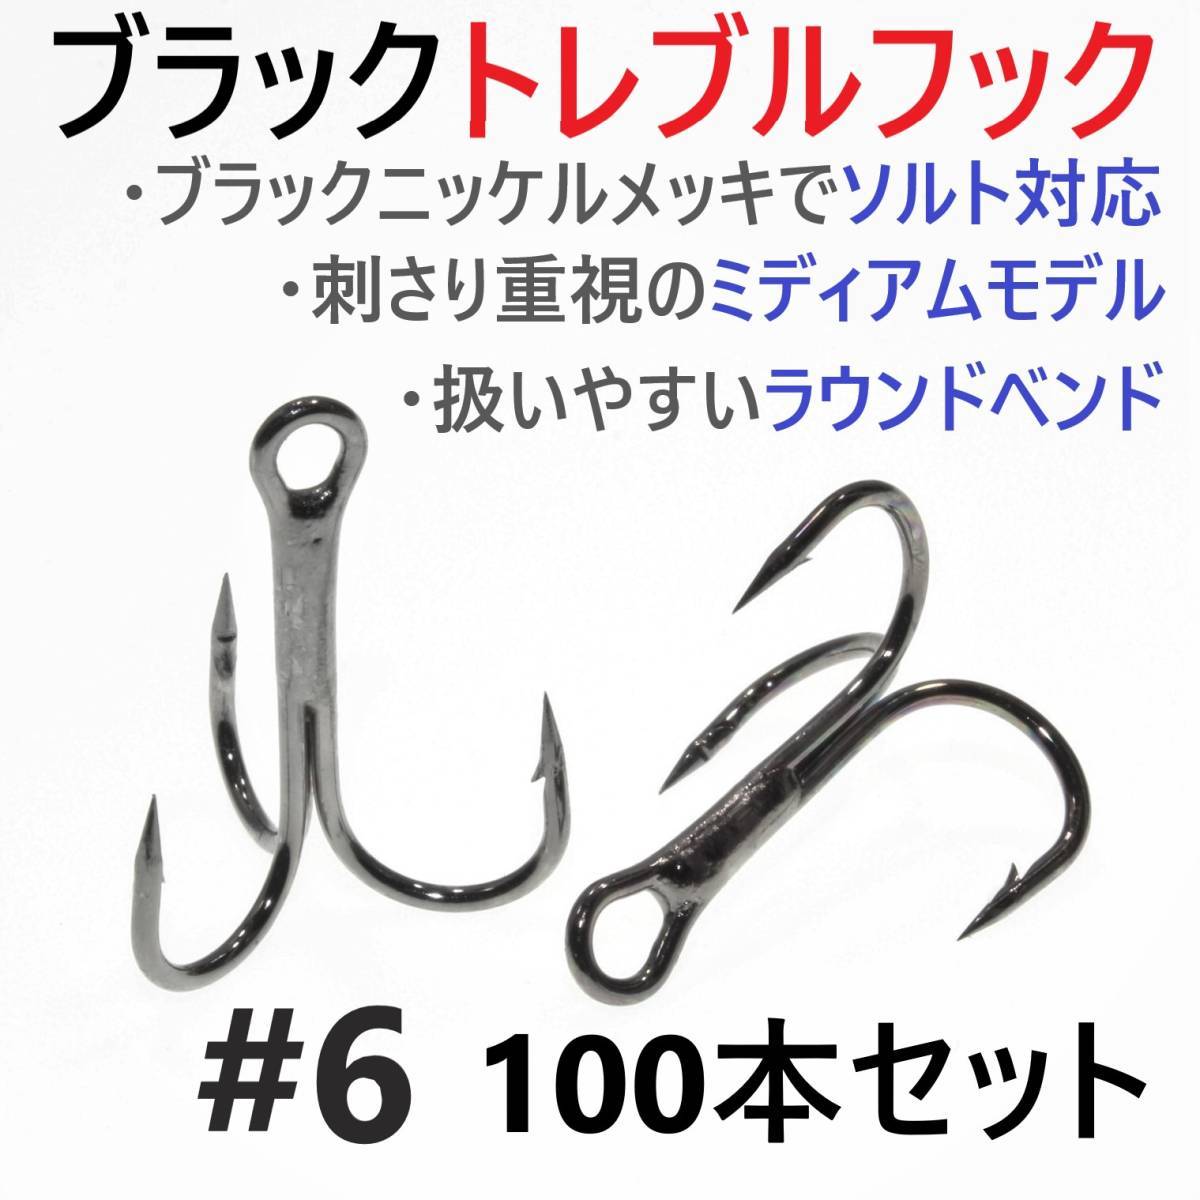 [Стоимость доставки 140 иен] Черный крюк Trreble #6 100 сетов с тройной привязкой крюк Соль соль Совместимый рыбалка HNOR